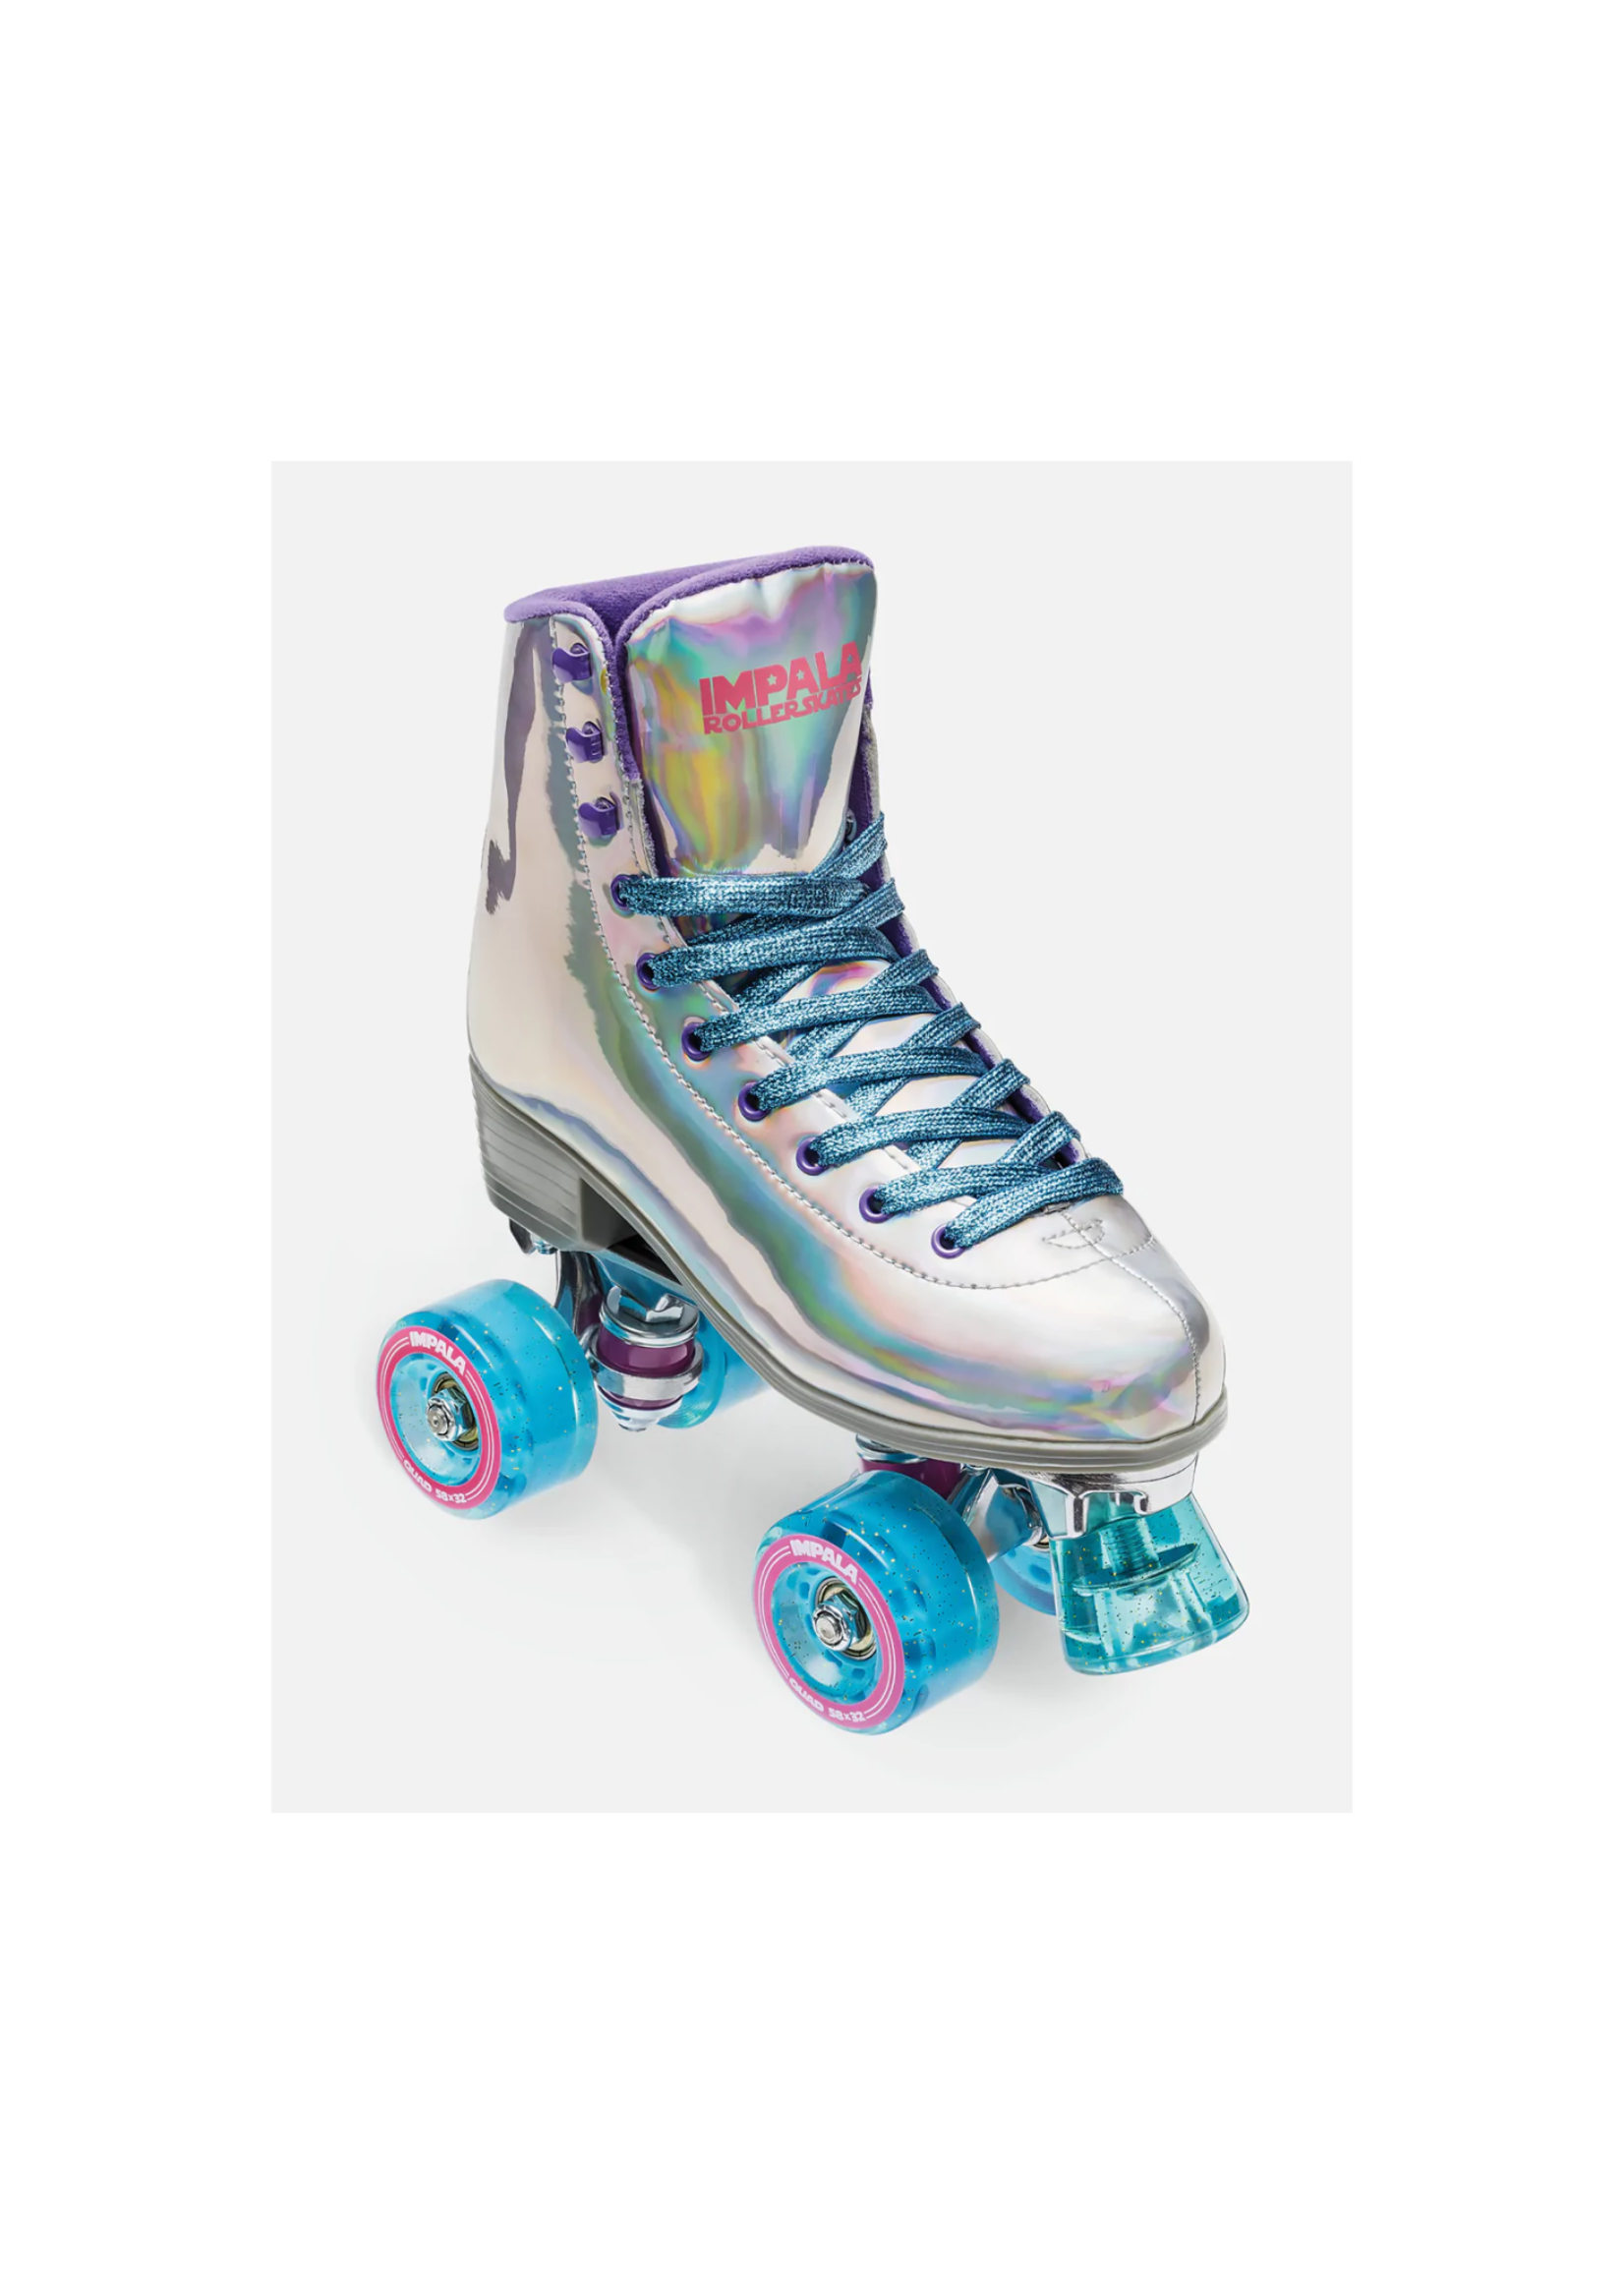 IMPALA IMPALA - Roller Skates - Holographic - 7US